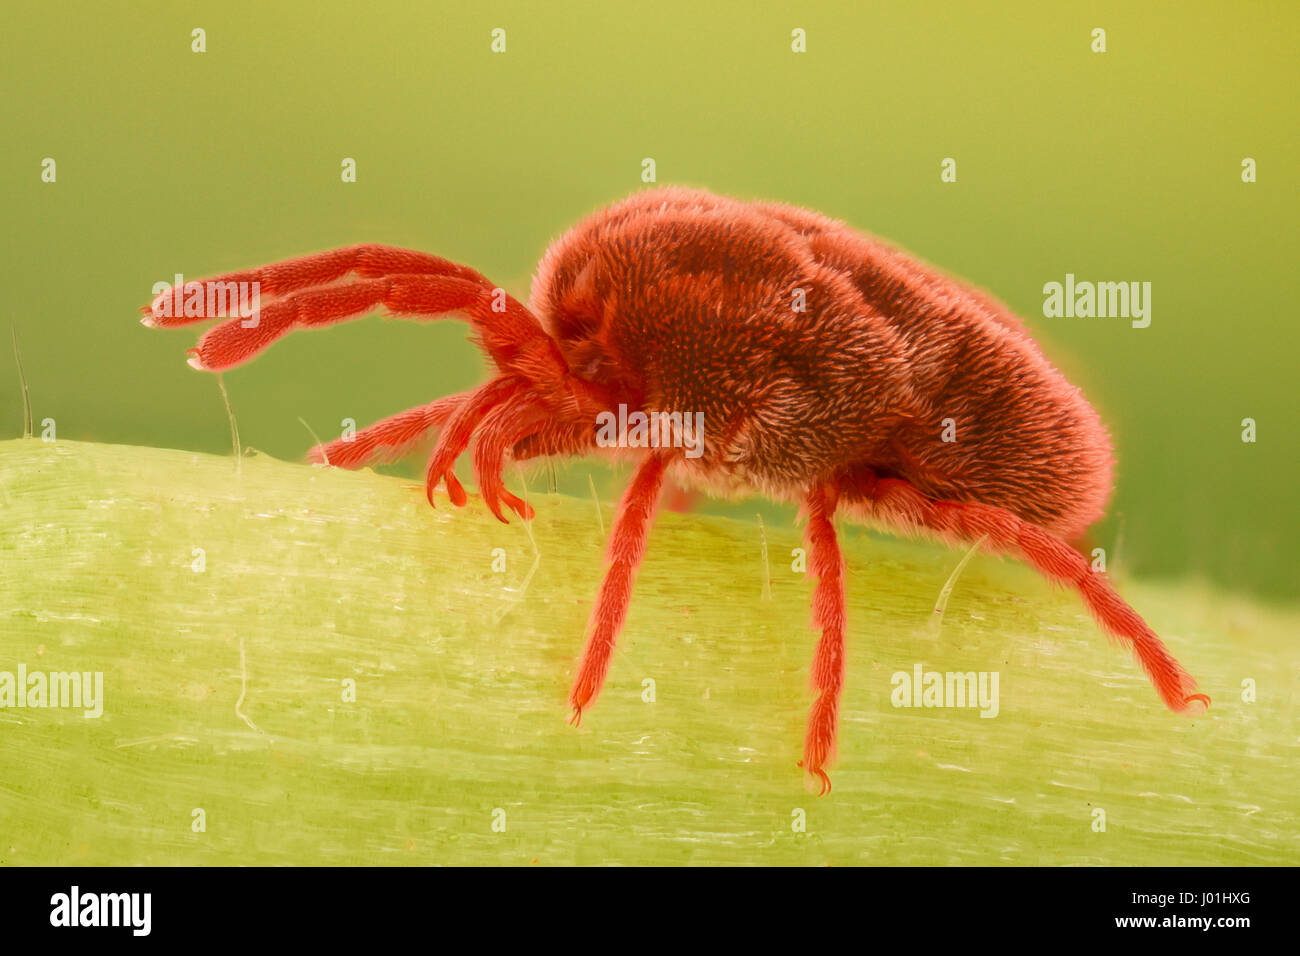 Extreme magnification - Red Velvet Mite, Trombidiidae Stock Photo